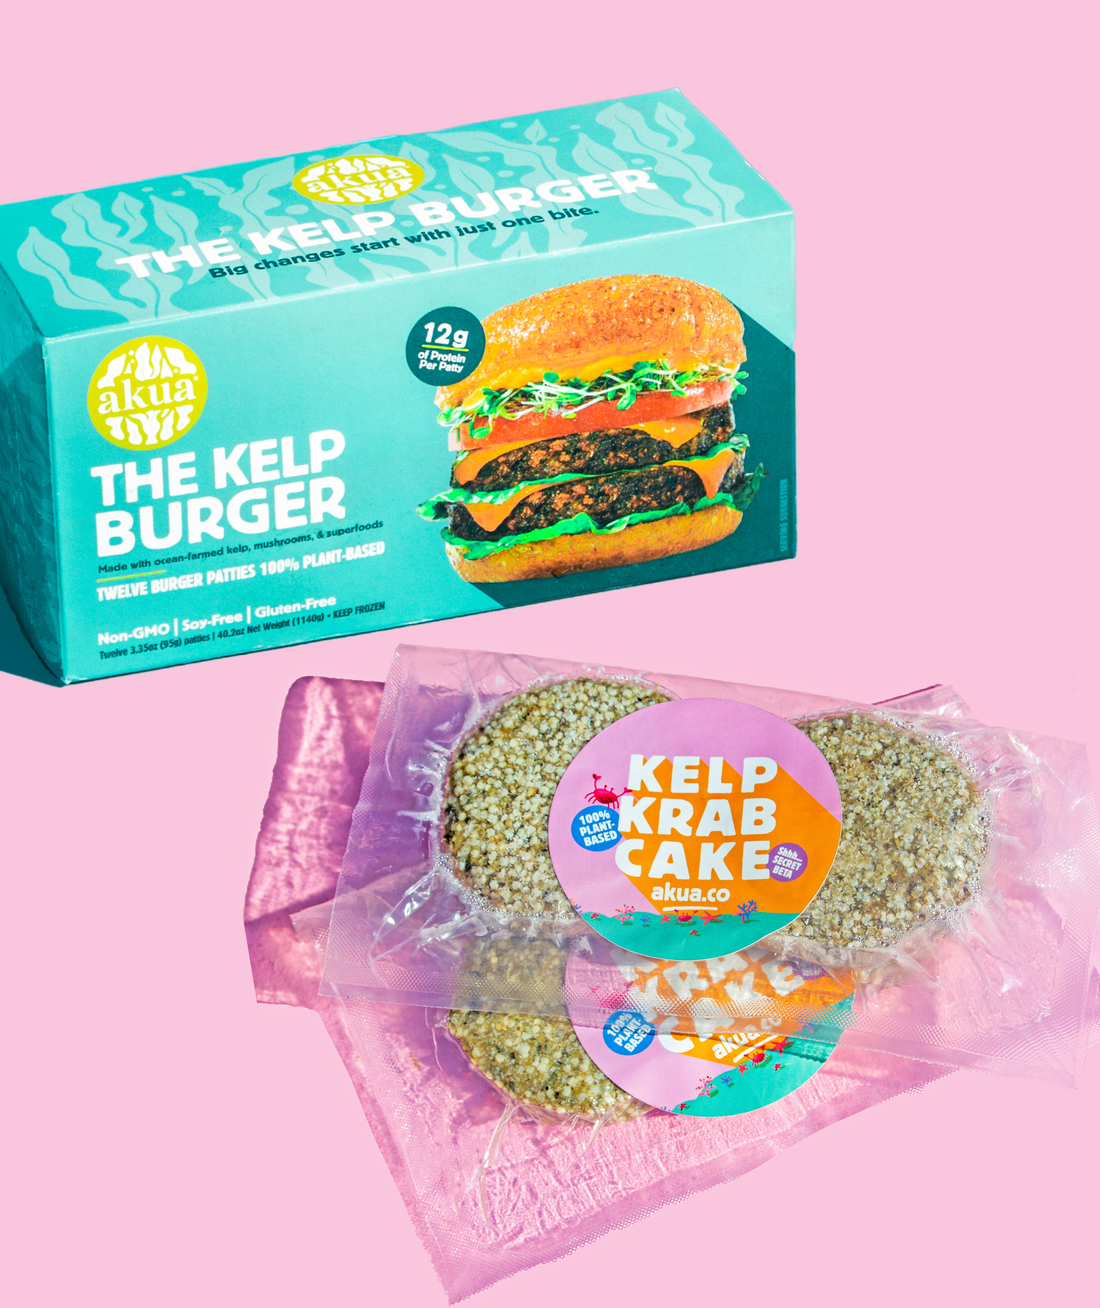 kelp burger box next to packets of kelp krab cake